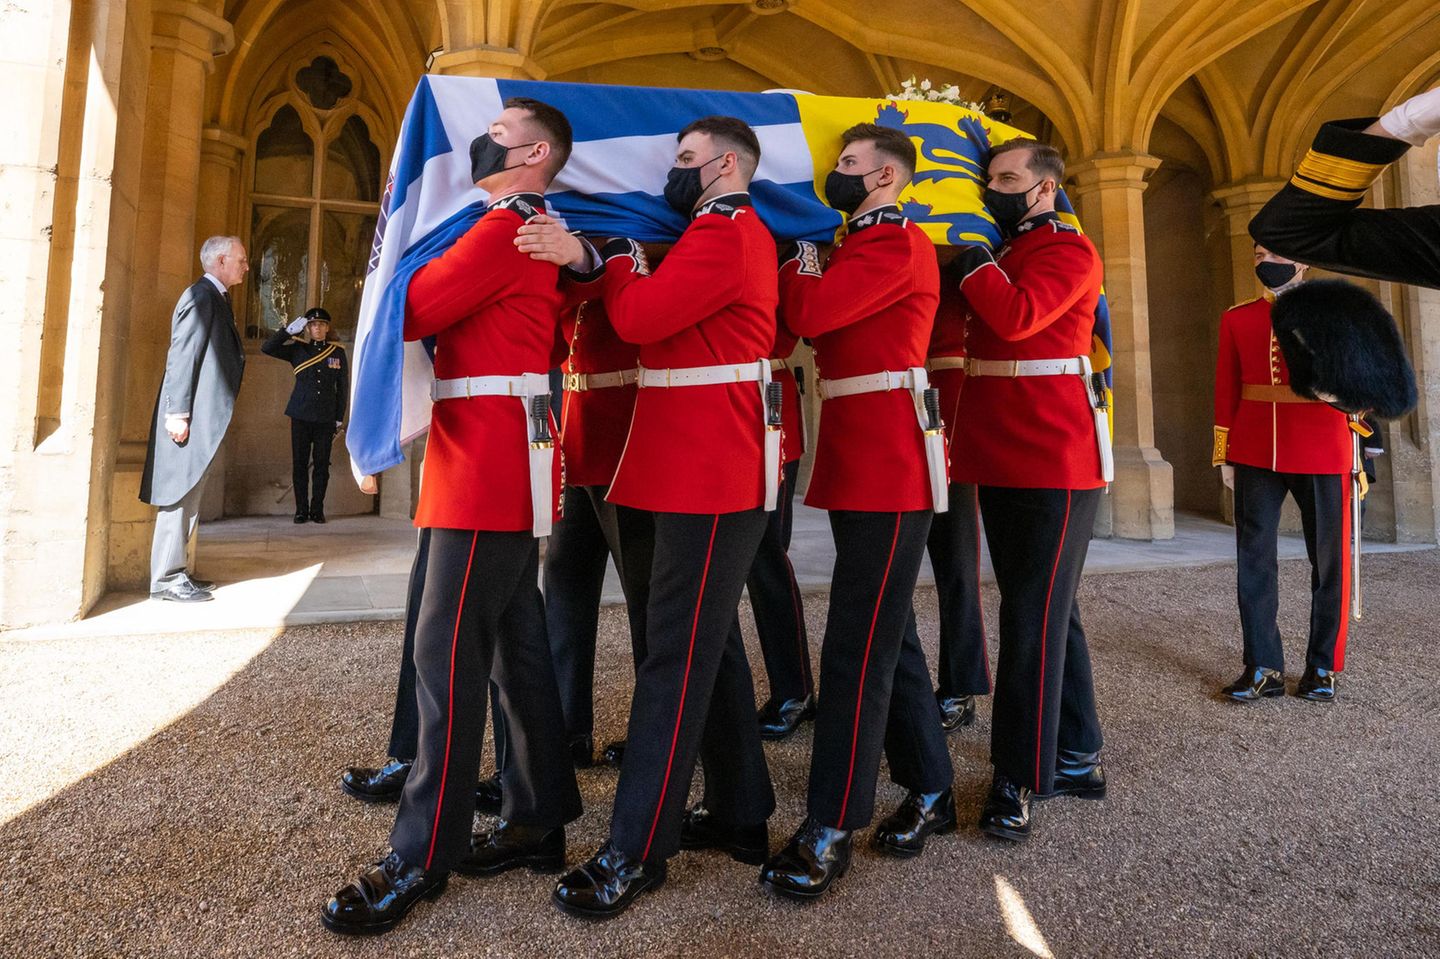 Die Trauerfeierlichkeiten haben begonnen. Der Sarg mit dem Leichnam von Prinz Philip wird von Mitglieder der Marine und anderen Regiment und Corps aus dem Schloss getragen.